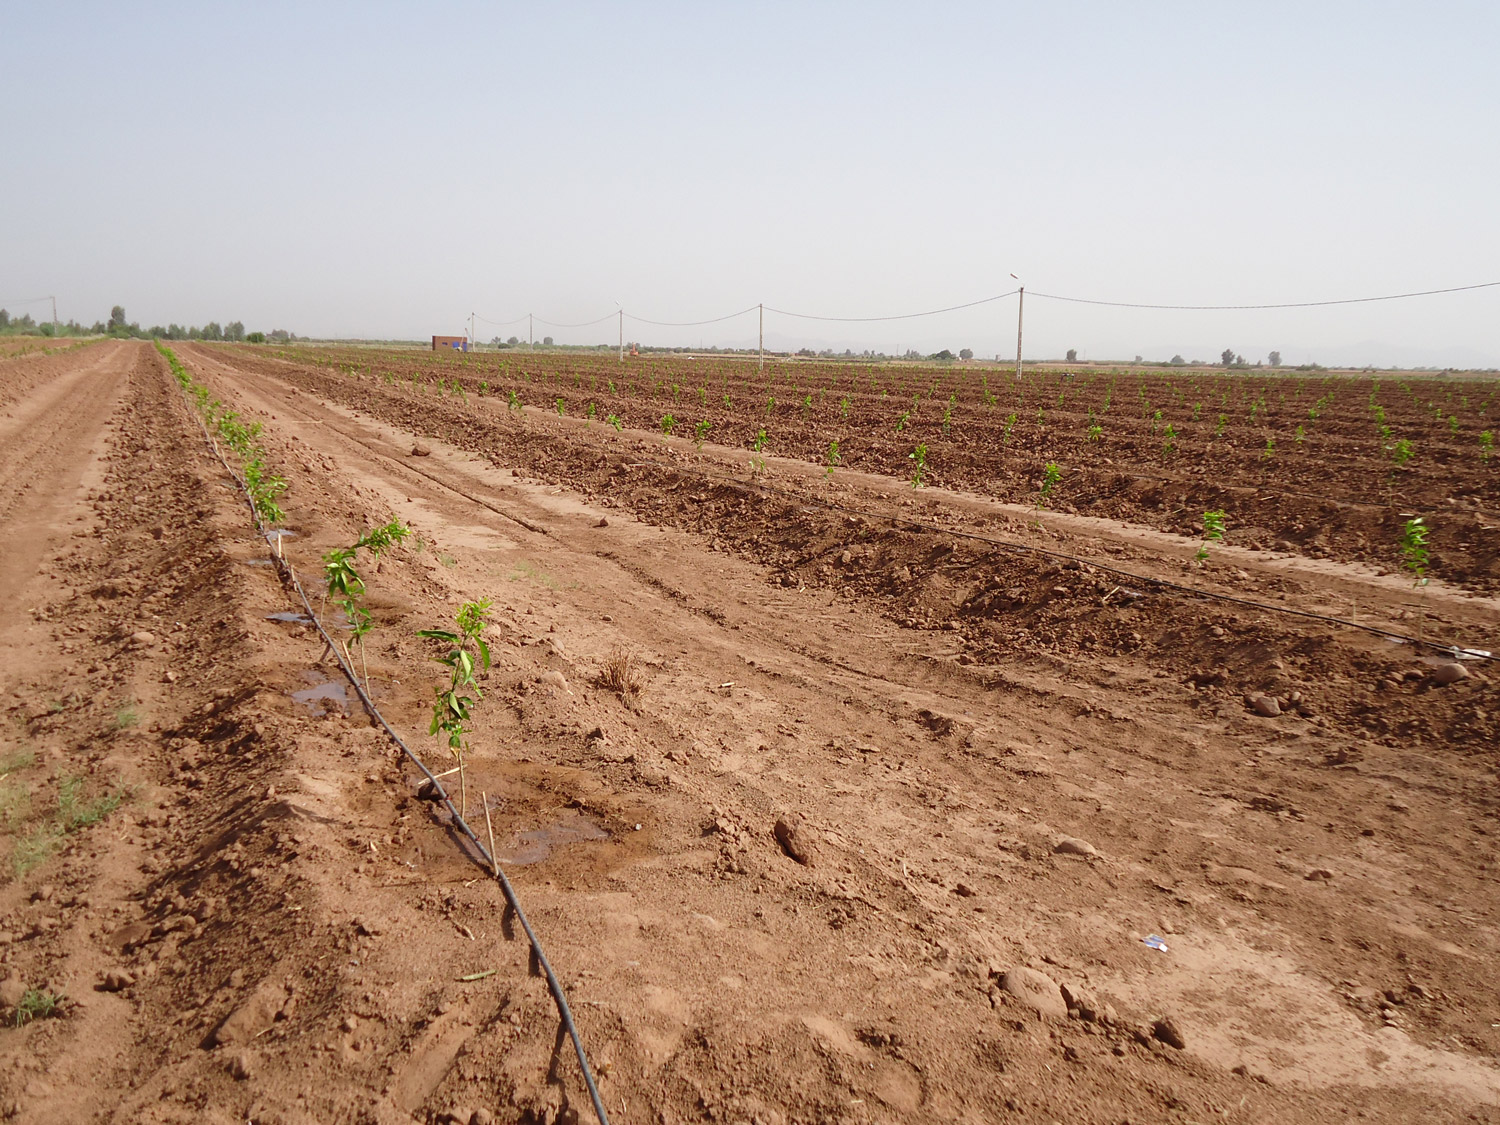 Novagric ejecutó un proyecto de invernaderos semilleros para Syngenta en Marruecos, equipados con tecnología avanzada para la producción profesional de variedades de semillas.